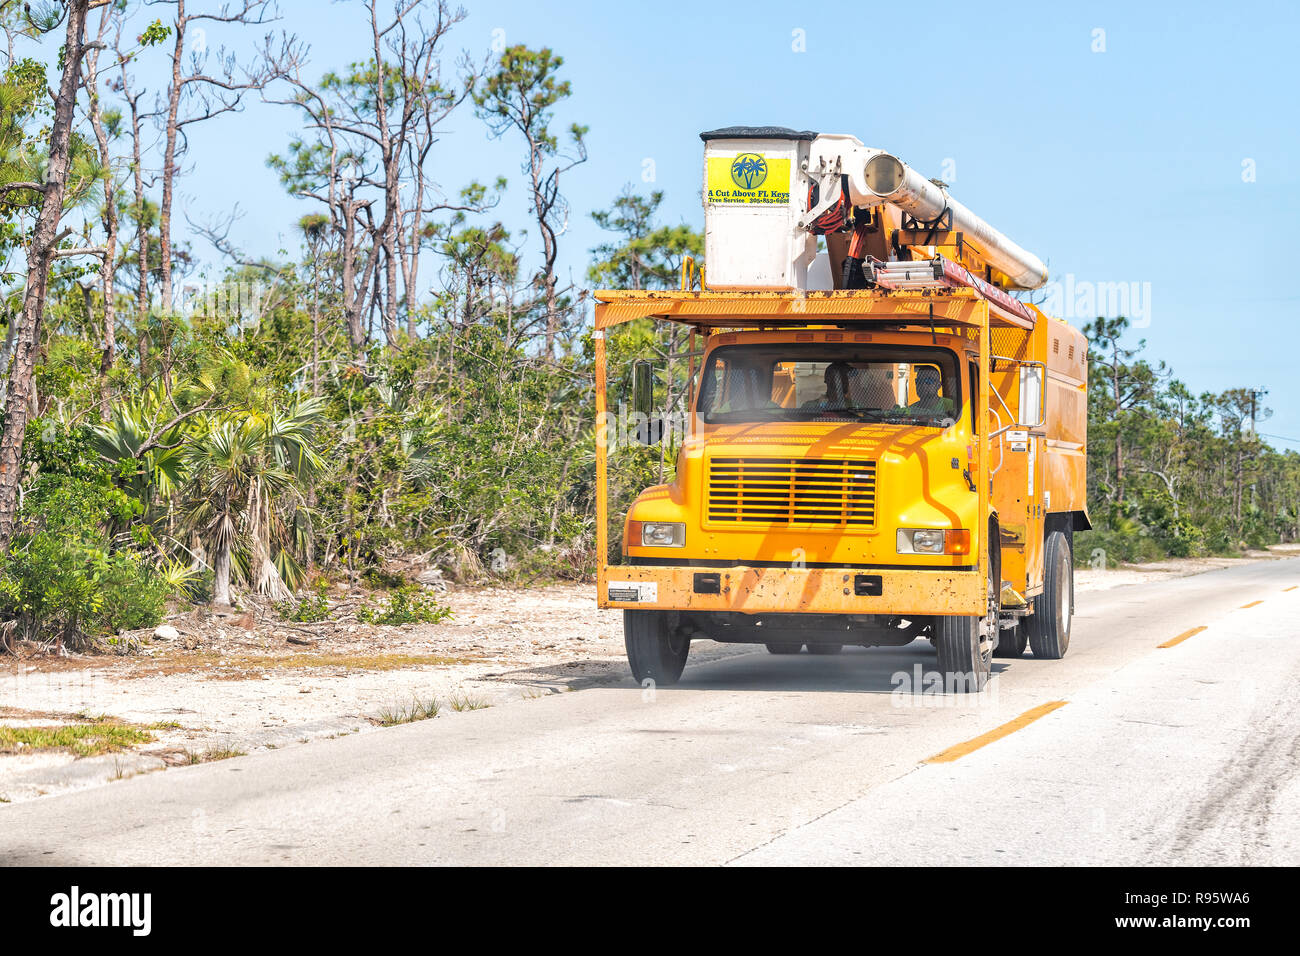 Big Pine Key, États-Unis - 1 mai 2018 : une coupe au-dessus des touches fl tree service professionnel chariot avec godet, les travailleurs de la conduite sur route en Floride, fournissant des arbres Banque D'Images